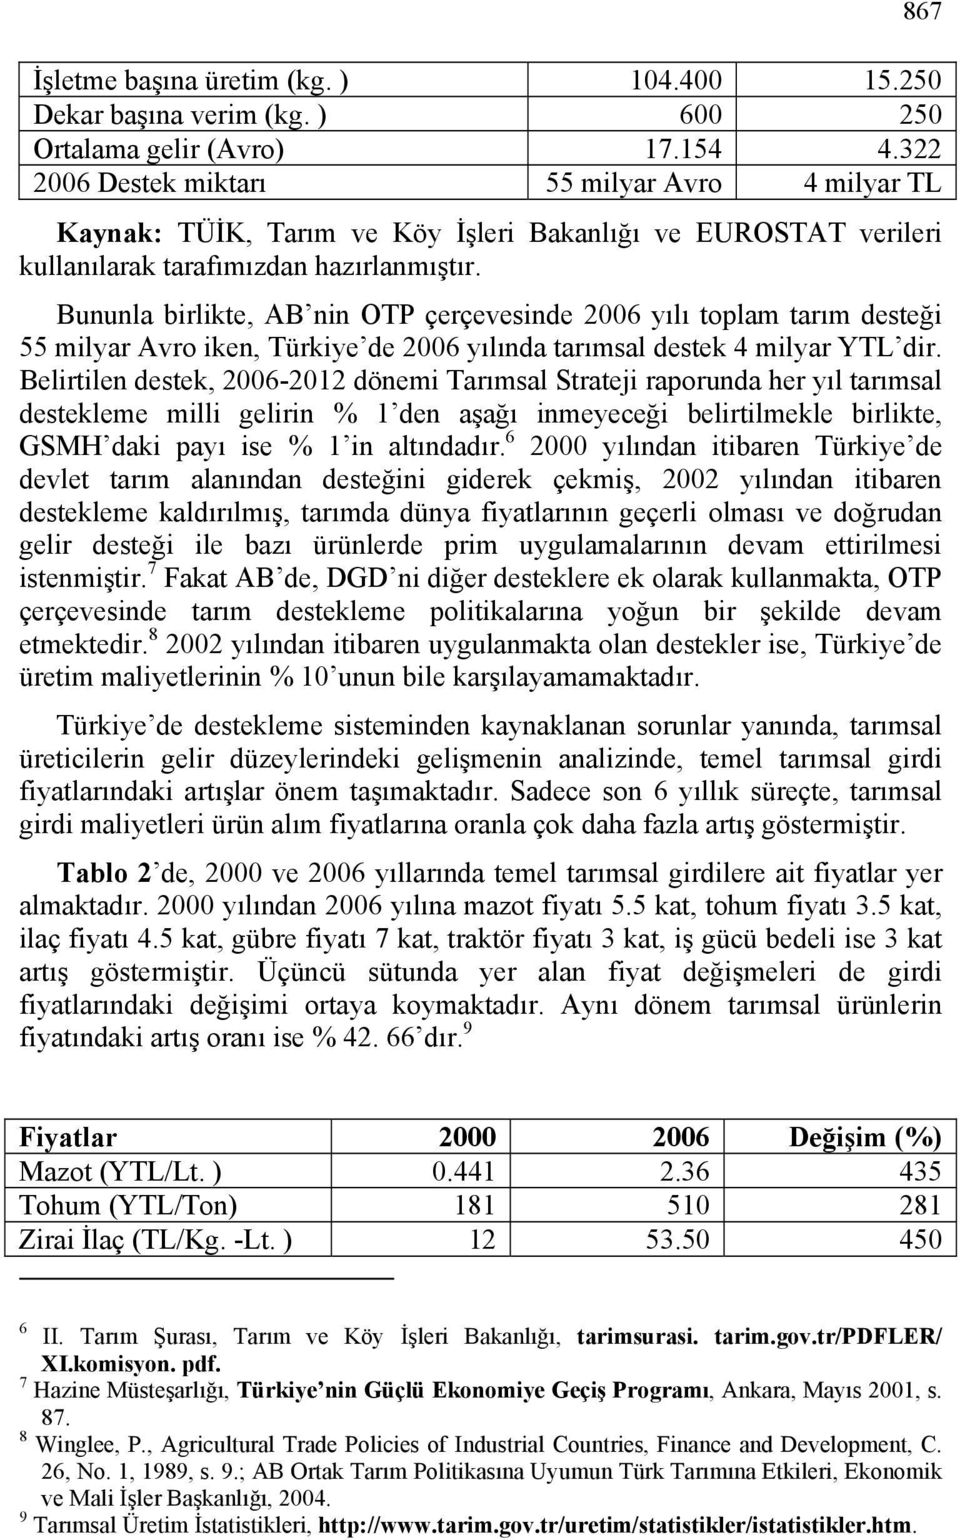 Bununla birlikte, AB nin OTP çerçevesinde 2006 yılı toplam tarım desteği 55 milyar Avro iken, Türkiye de 2006 yılında tarımsal destek 4 milyar YTL dir.